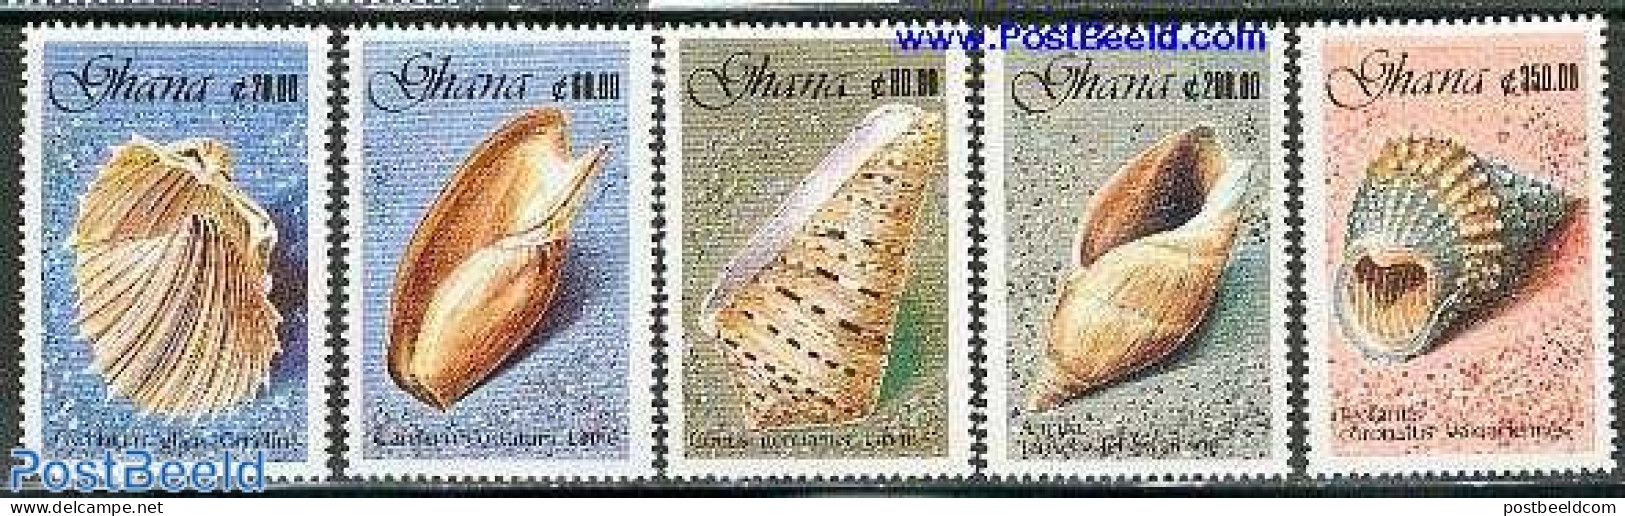 Ghana 1990 Shells 5v, Mint NH, Nature - Shells & Crustaceans - Vita Acquatica